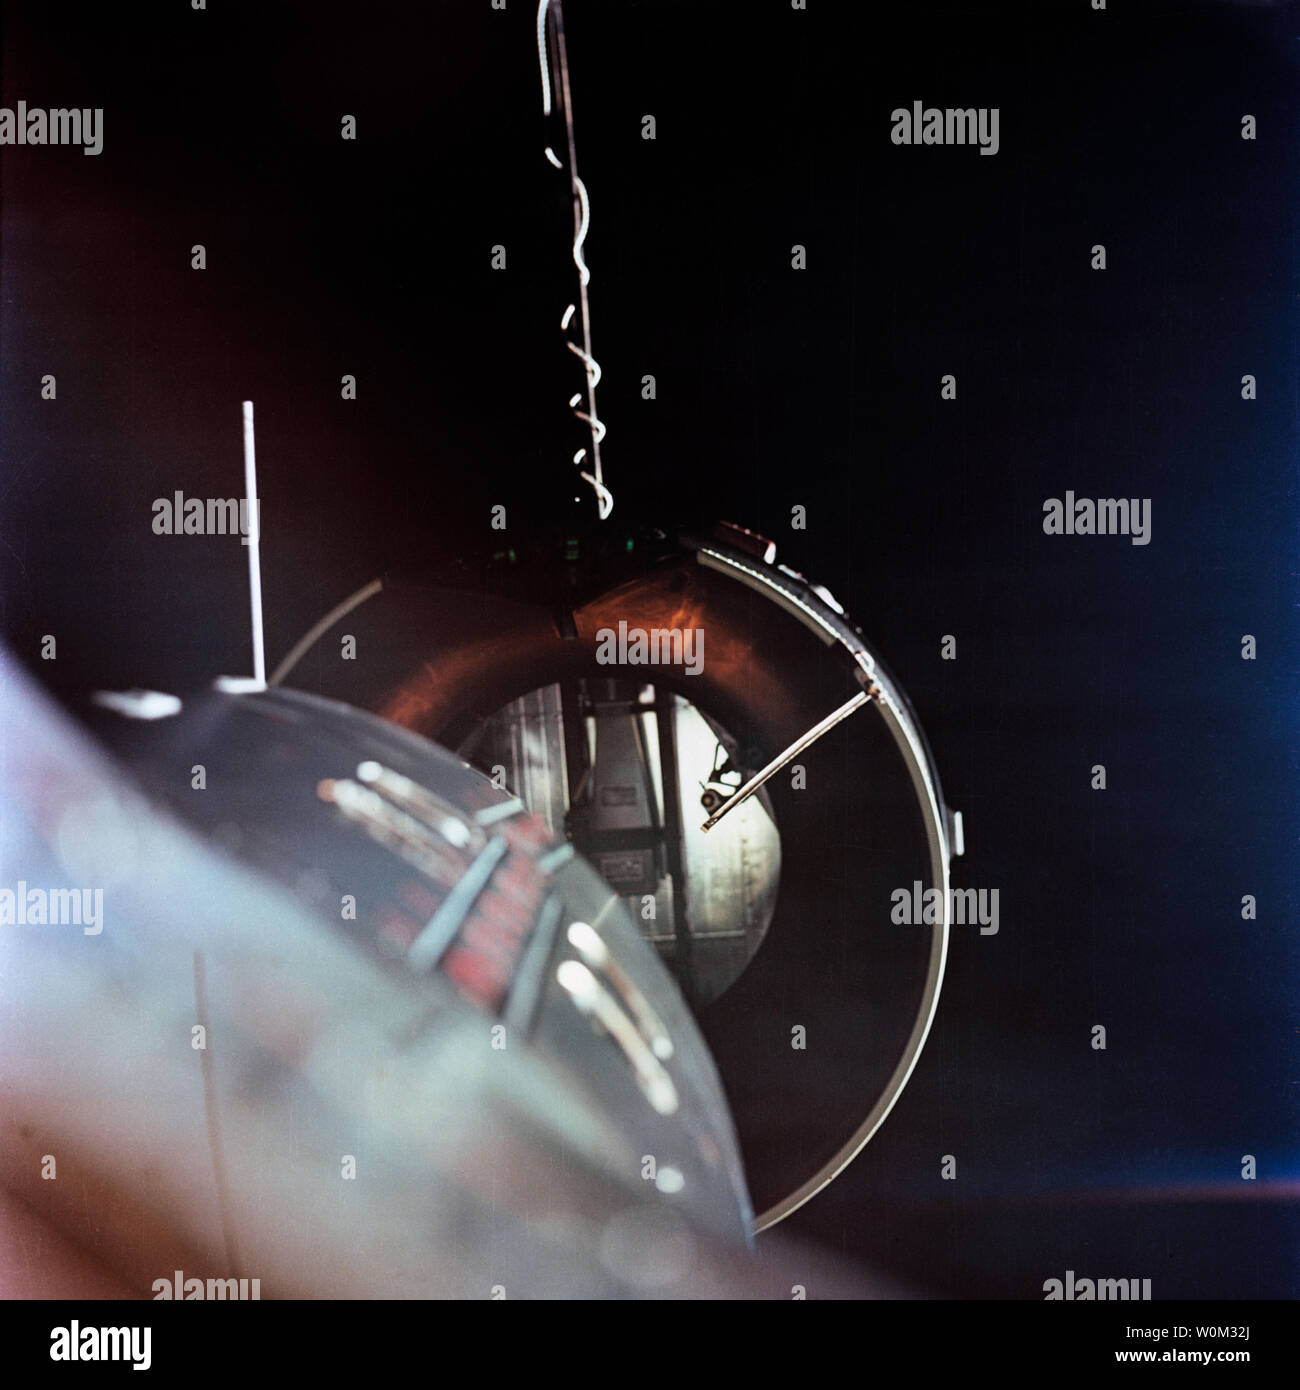 Um die Agena Target Docking Fahrzeug aus dem Gemini 8 Satelliten während Andocken im Raum am März 16, 1966 gesehen. Das Gemini-Adapter der Agena ist ungefähr zwei Fuß von der Nase des Raumfahrzeugs (links unten). Besatzungsmitglieder für das Gemini 8 Mission waren Astronauten Neil Armstrong, Befehl Pilot, und David Scott, Pilot. März 16, 2016 markiert den 50. Jahrestag der NASA Gemini 8 Mission, das sechste bemannte Raumfahrt während Projekt Gemini Programms der Vereinigten Staaten durchgeführt. Das Hauptziel der Mission, dem erfolgreichen Andocken von zwei Satelliten in der Umlaufbahn, ein Firs Stockfoto